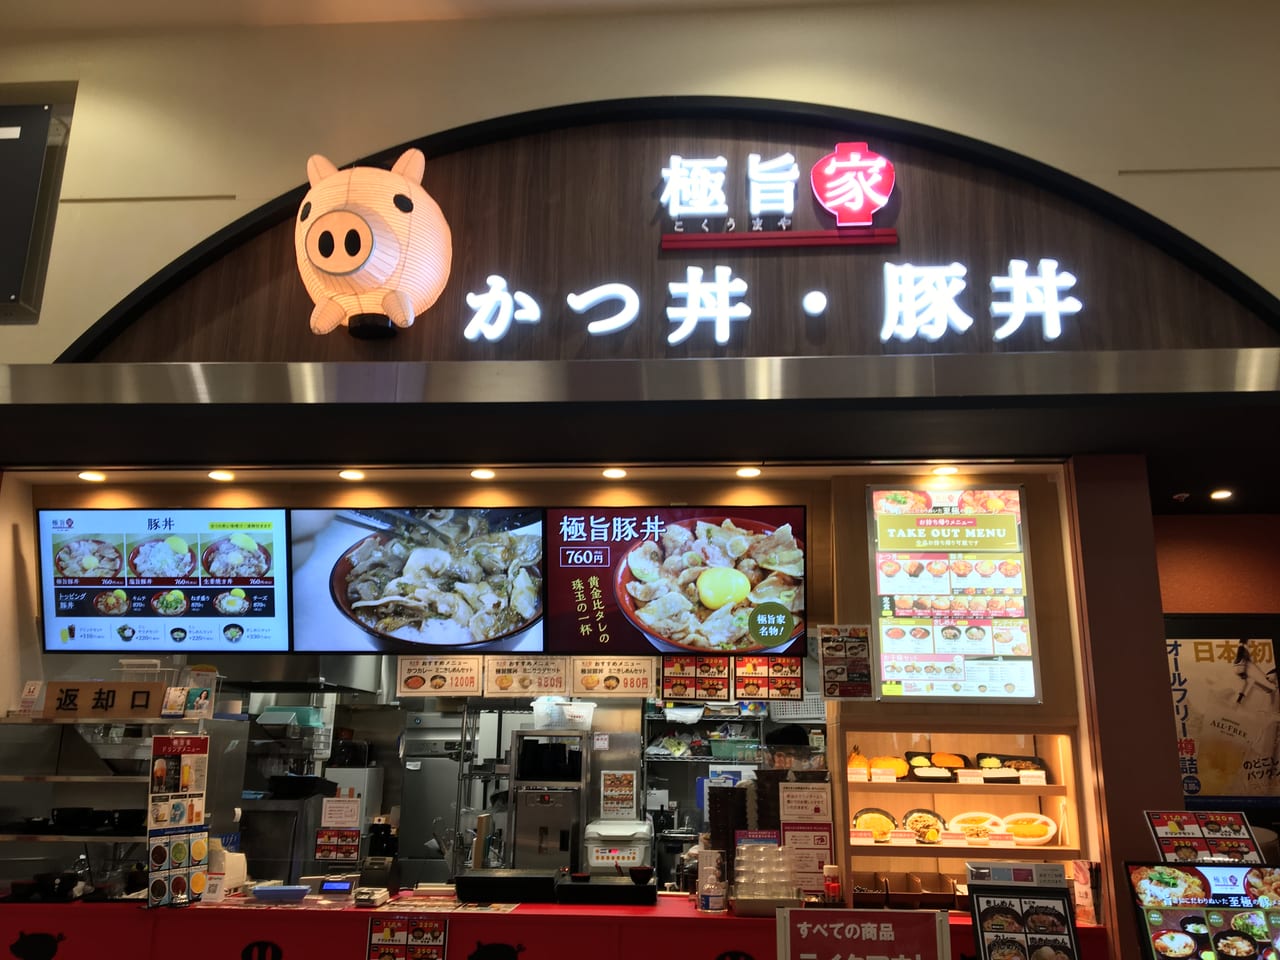 名古屋市東区 １２月２１日 イオンモールナゴヤドーム前 ２階フードコートにかつ丼 豚丼のお店 極旨家 がオープンしていました 号外net 名古屋市北区 東区